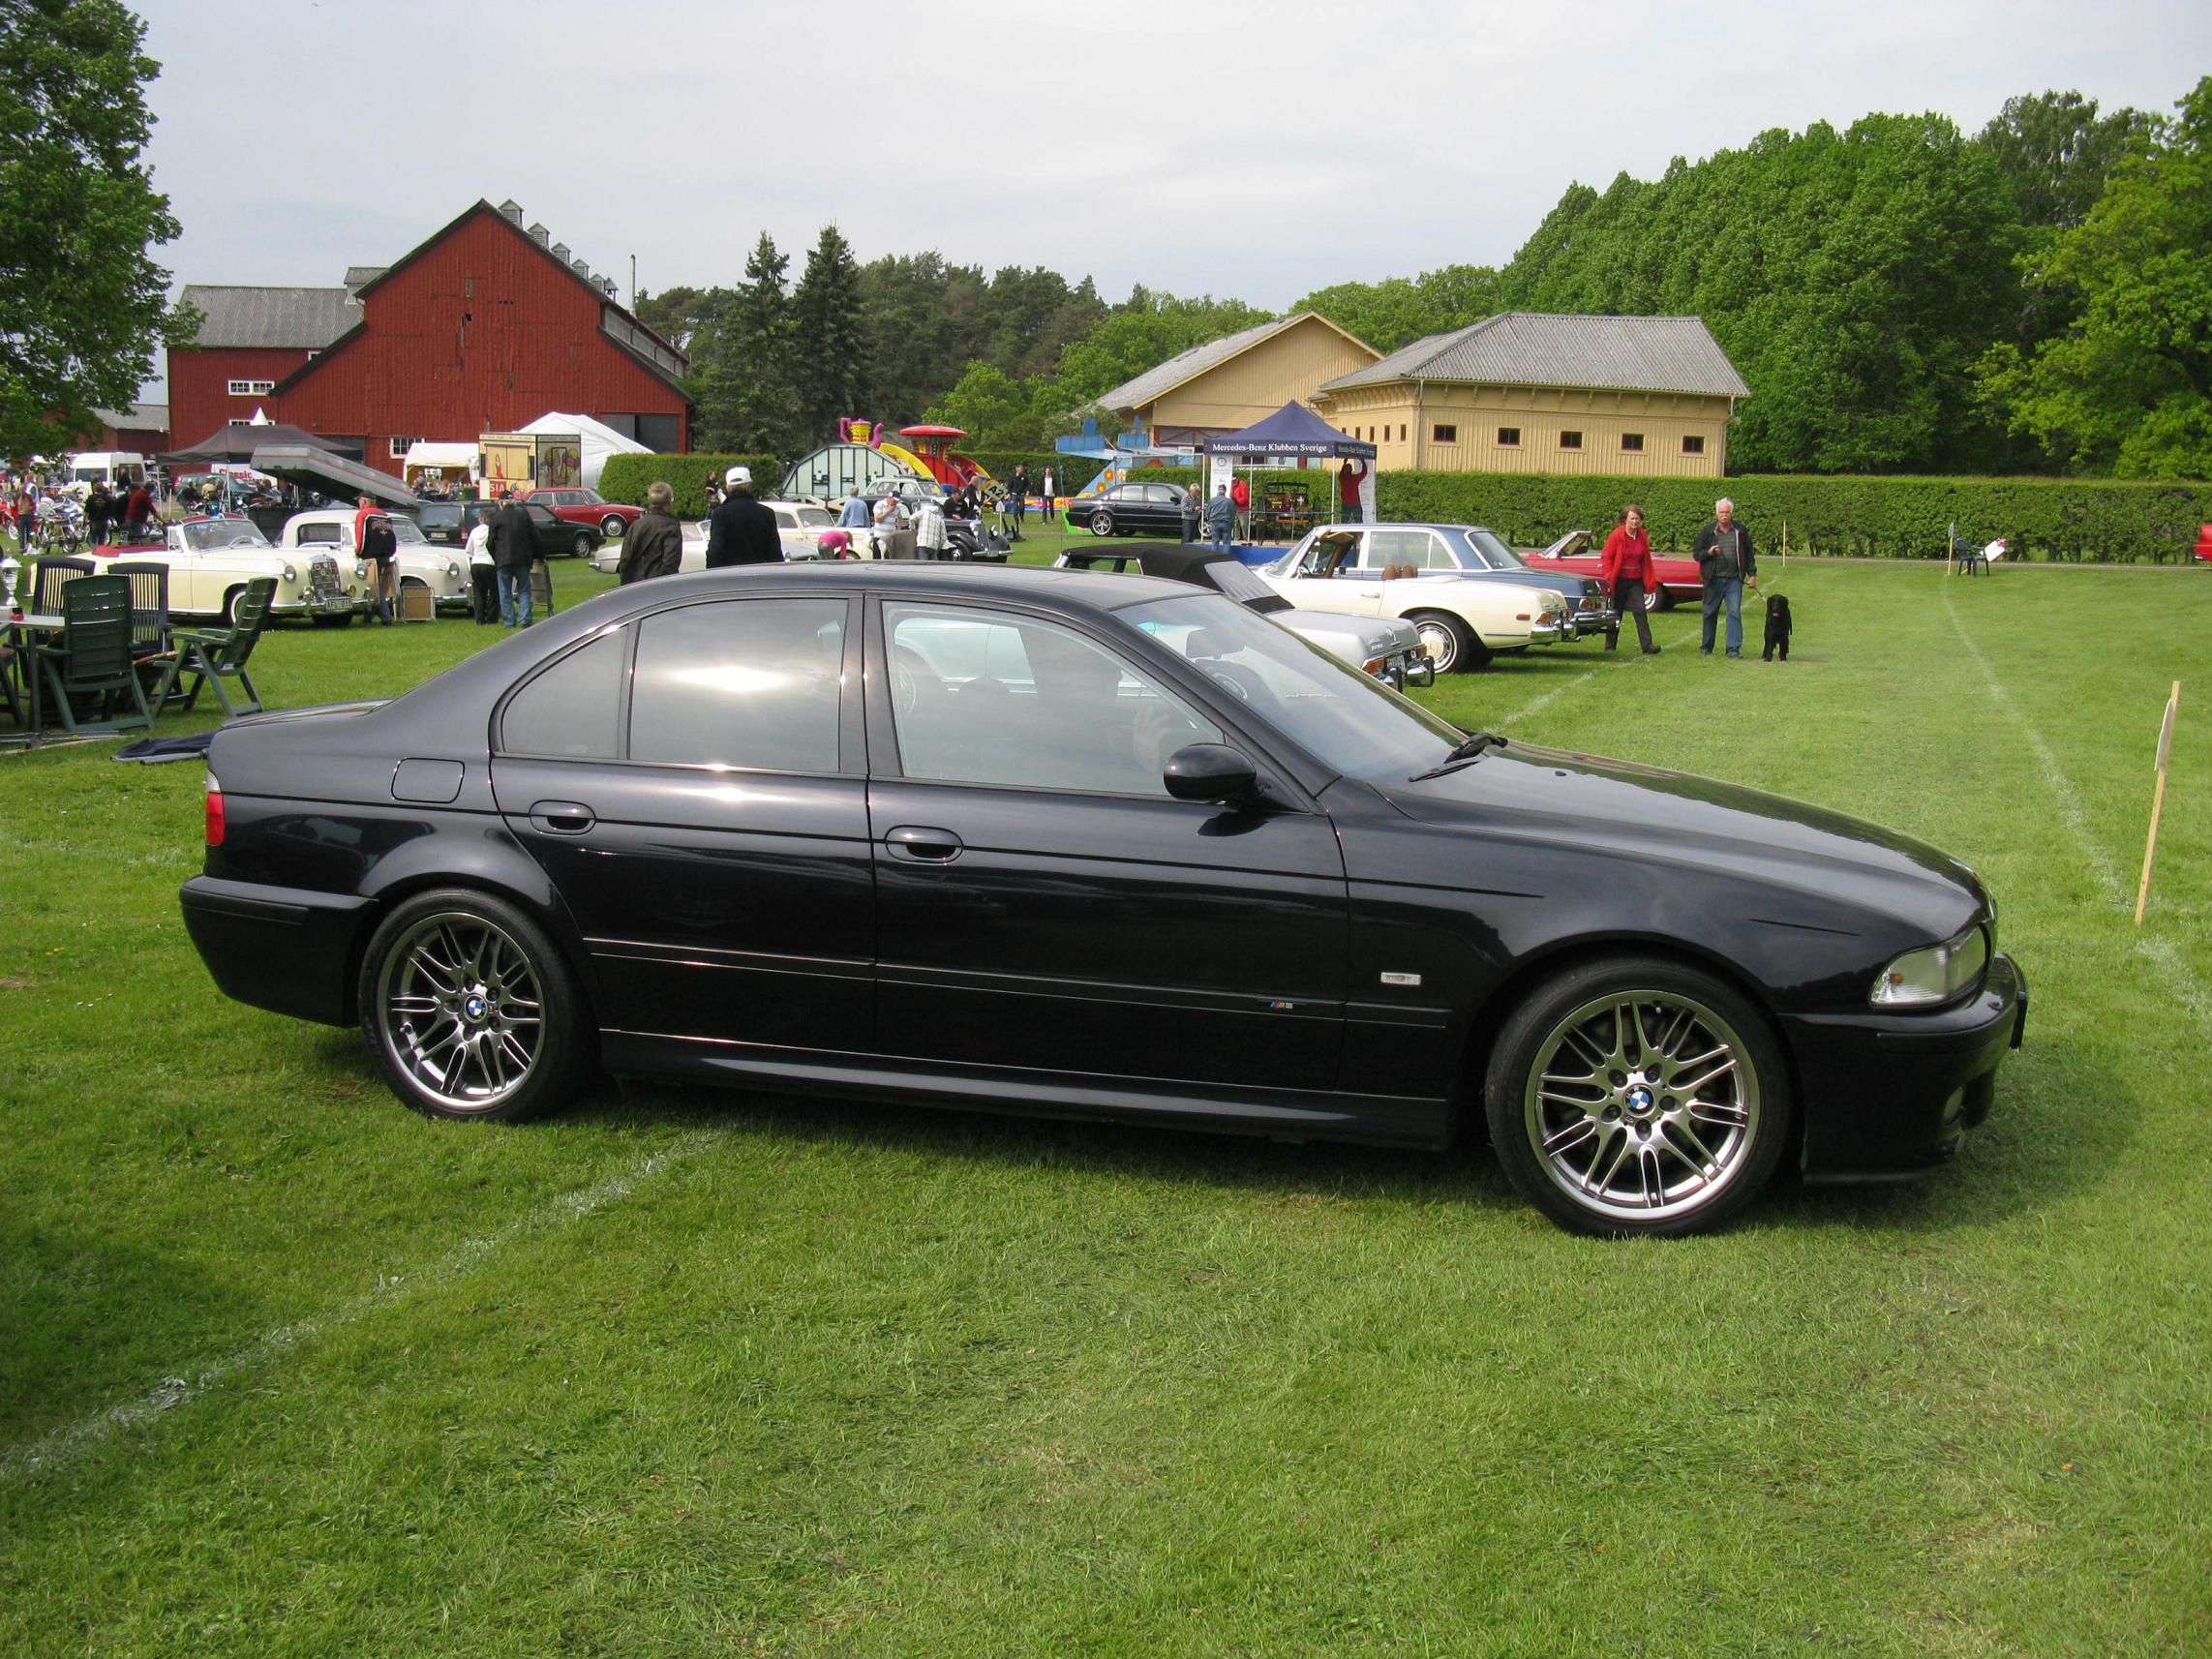 Black BMW M5 E39 at show